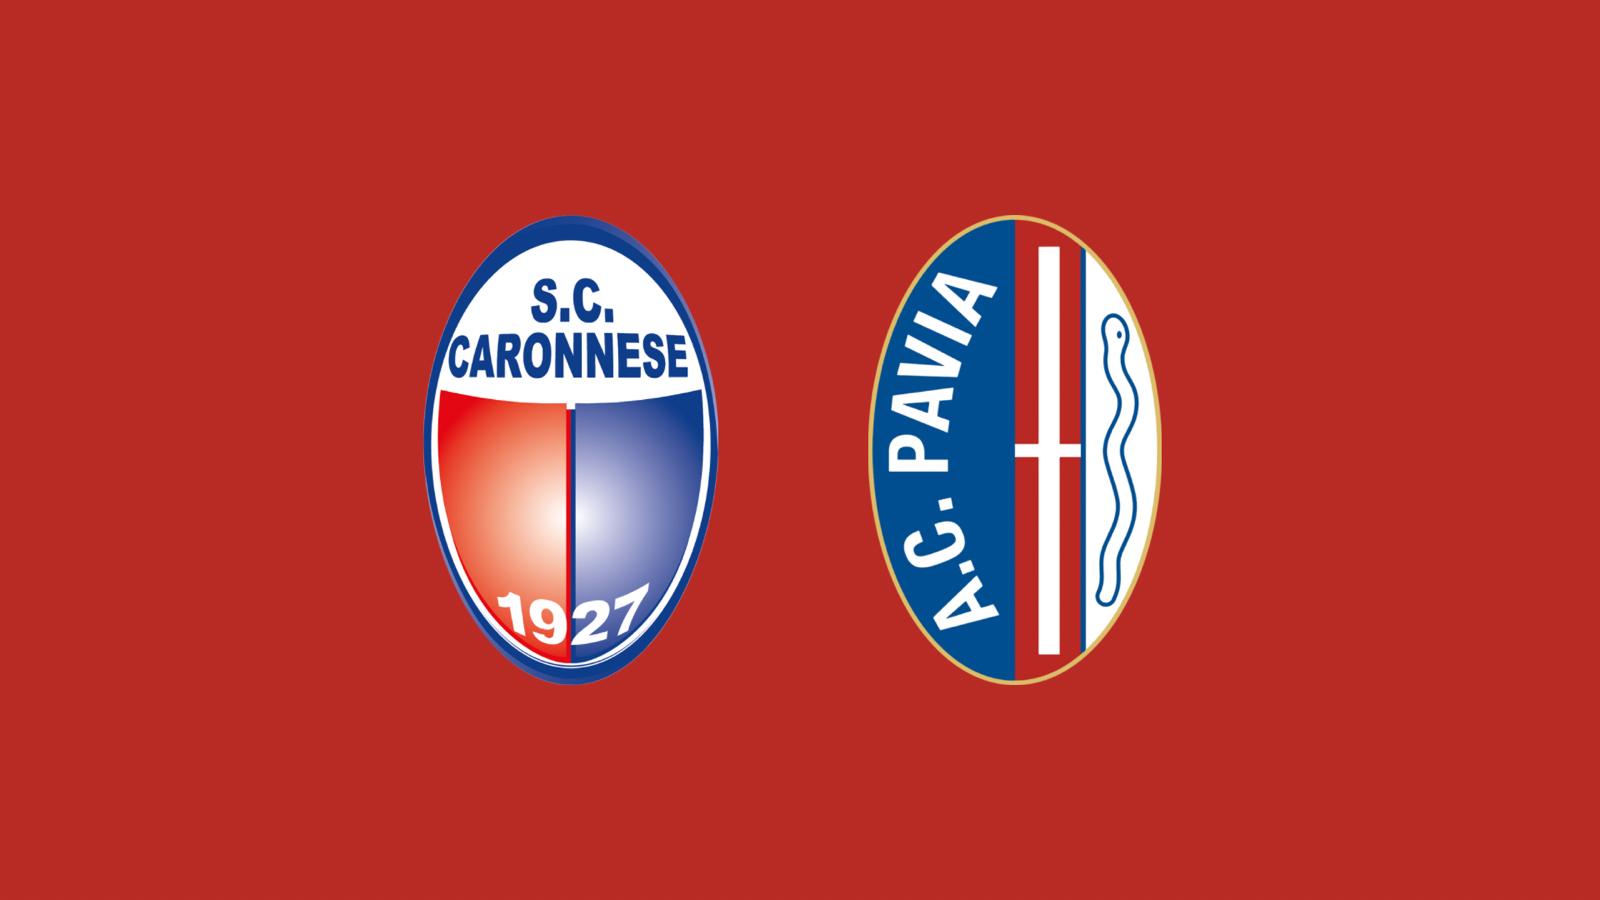 Caronnese 2-2 Pavia, Migliavacca rovina la fuga nel recupero: il commento